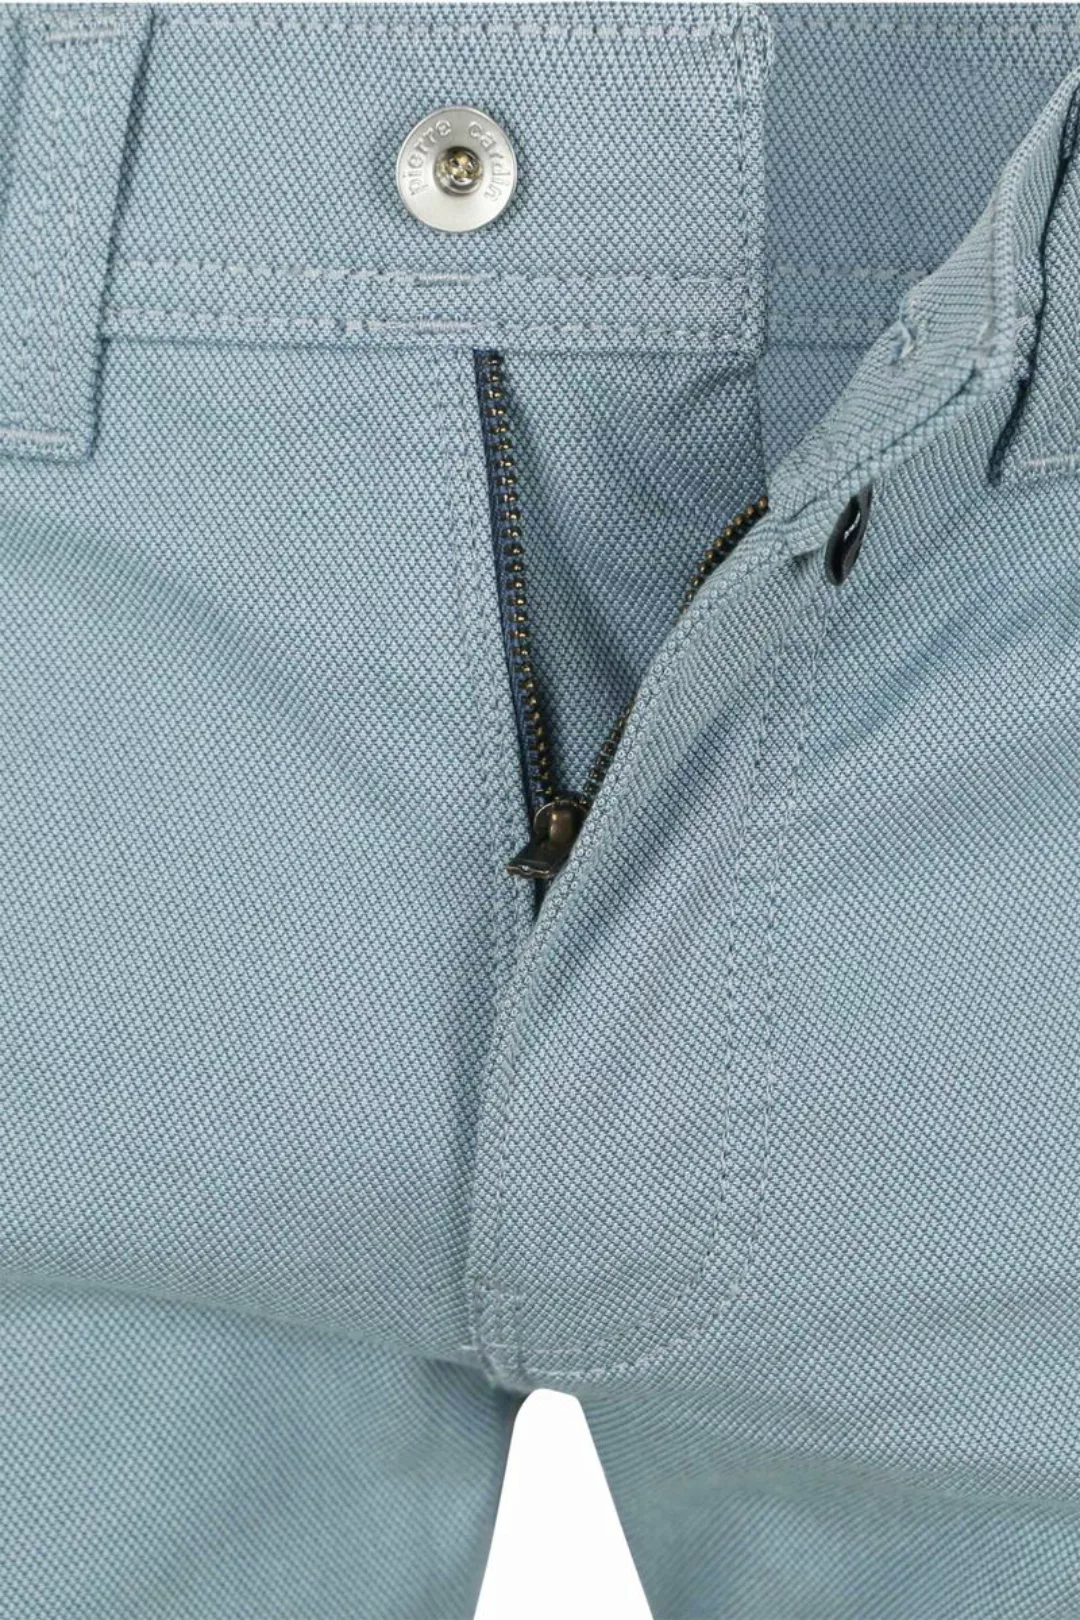 Pierre Cardin Trousers Lyon  Future Flex Hellblau - Größe W 34 - L 34 günstig online kaufen